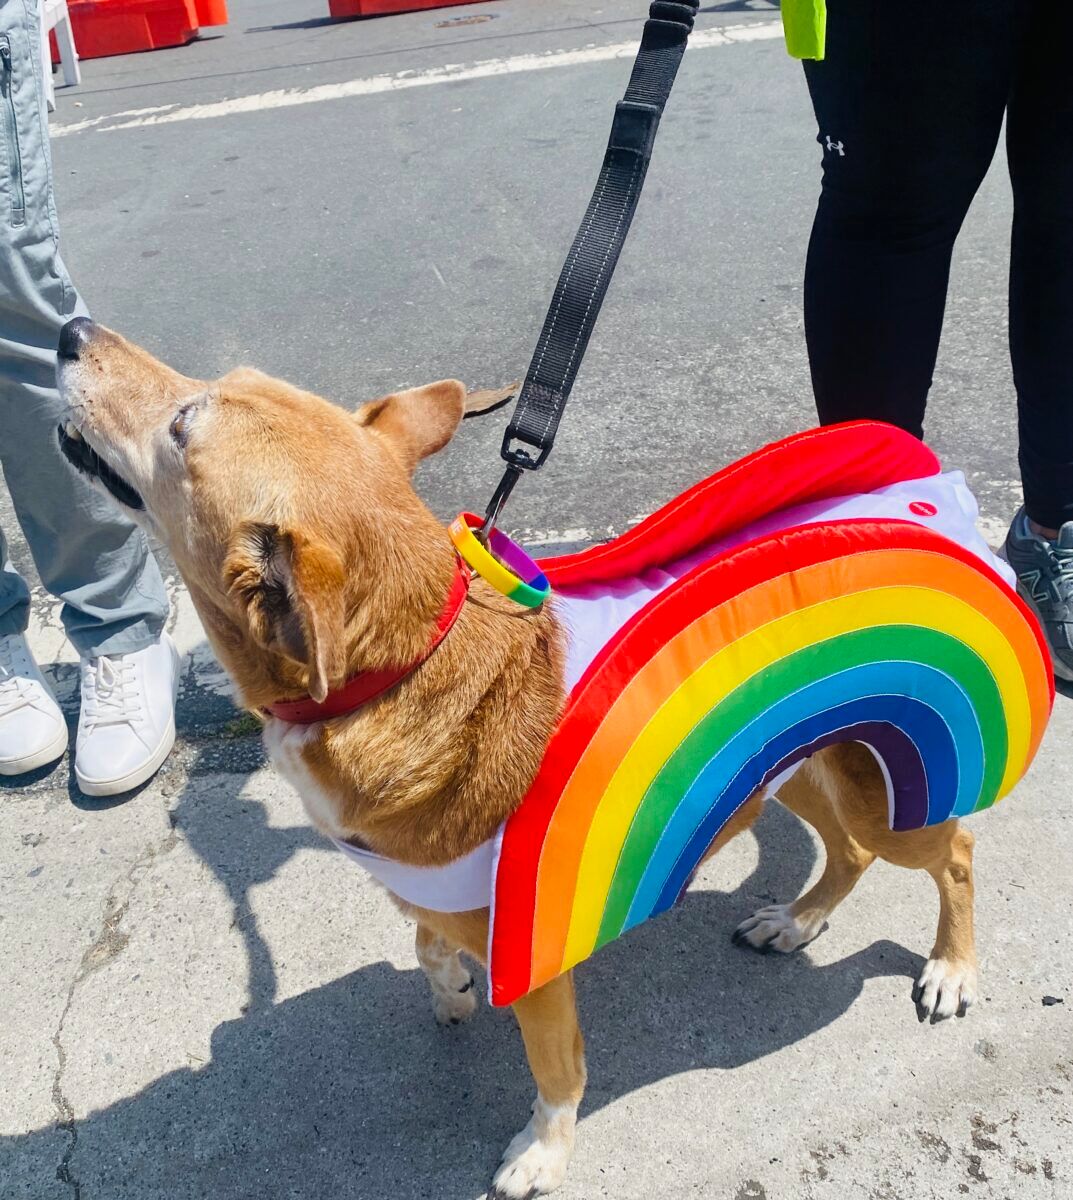 Rainbow dog at Long Beach Pride parade